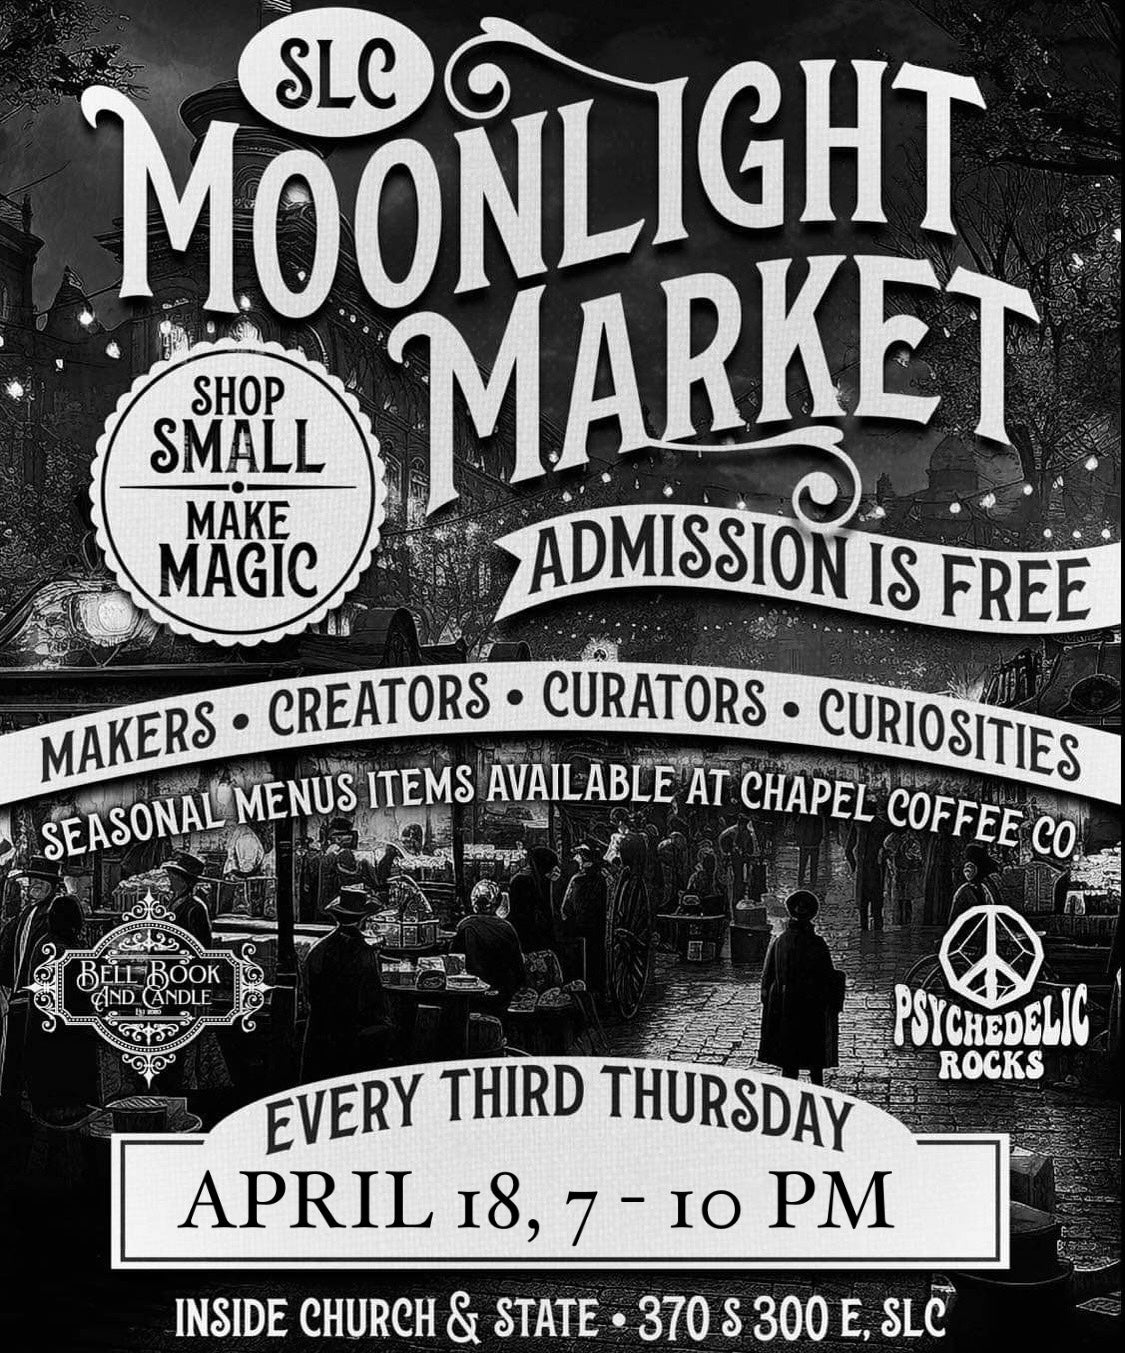 March Moonlight Market - Mezzanine Table